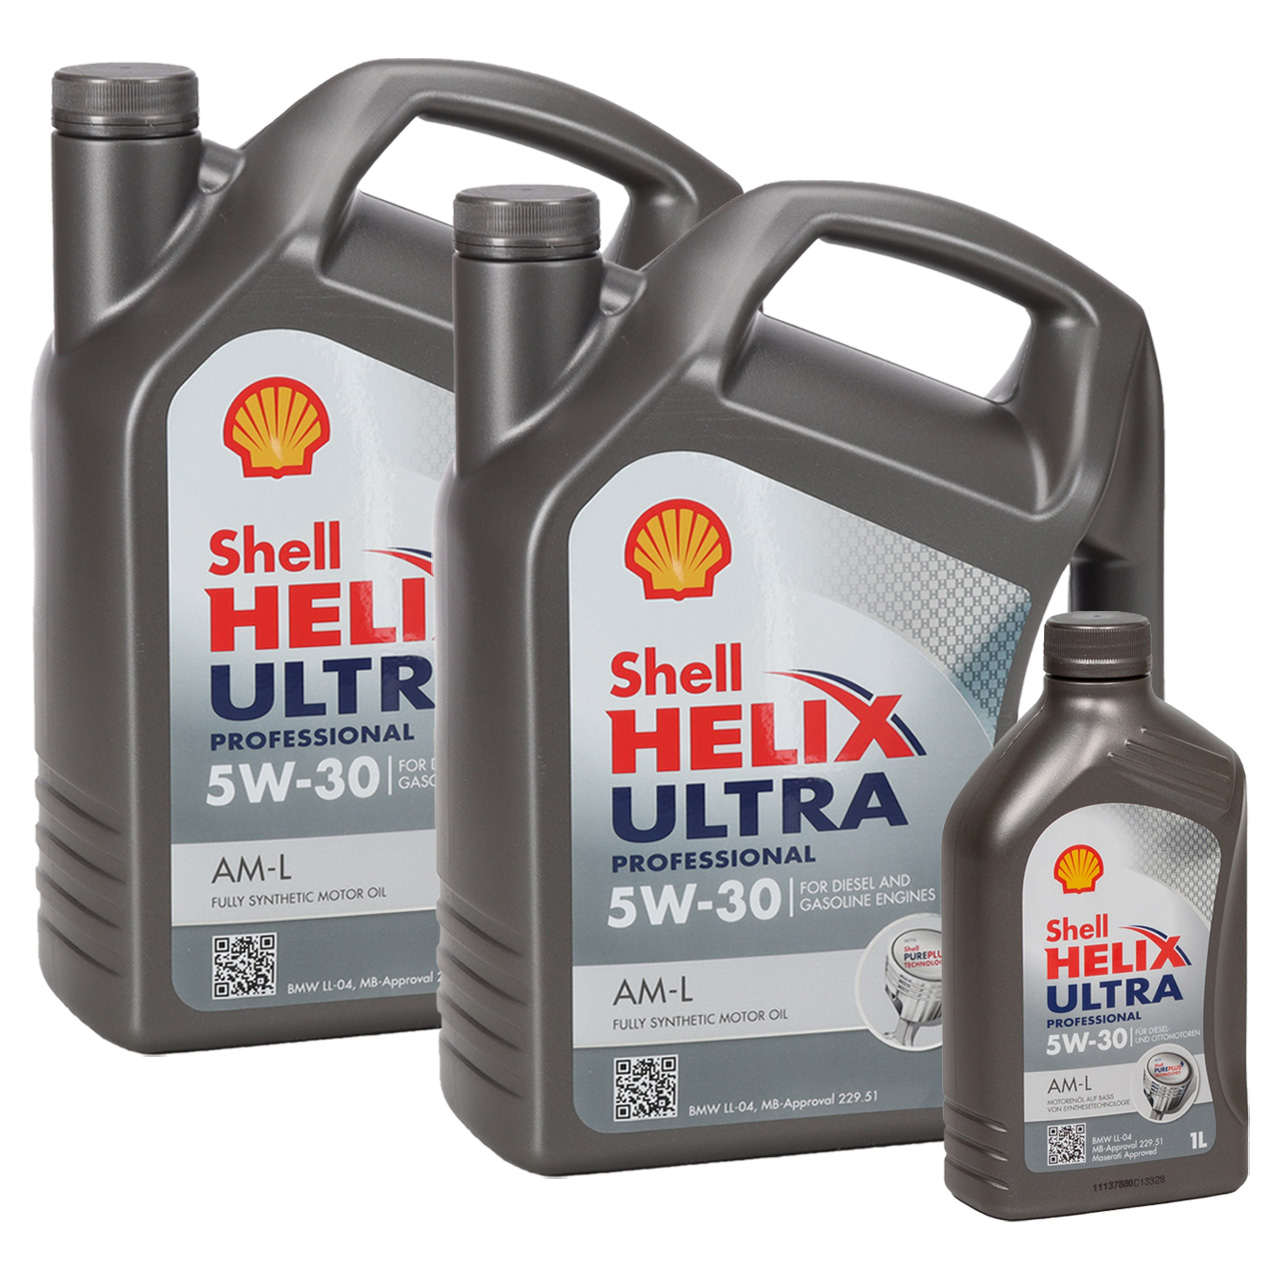 11L 11 Liter SHELL Motoröl Öl HELIX ULTRA Professional AM-L 5W30 für BMW LL-04